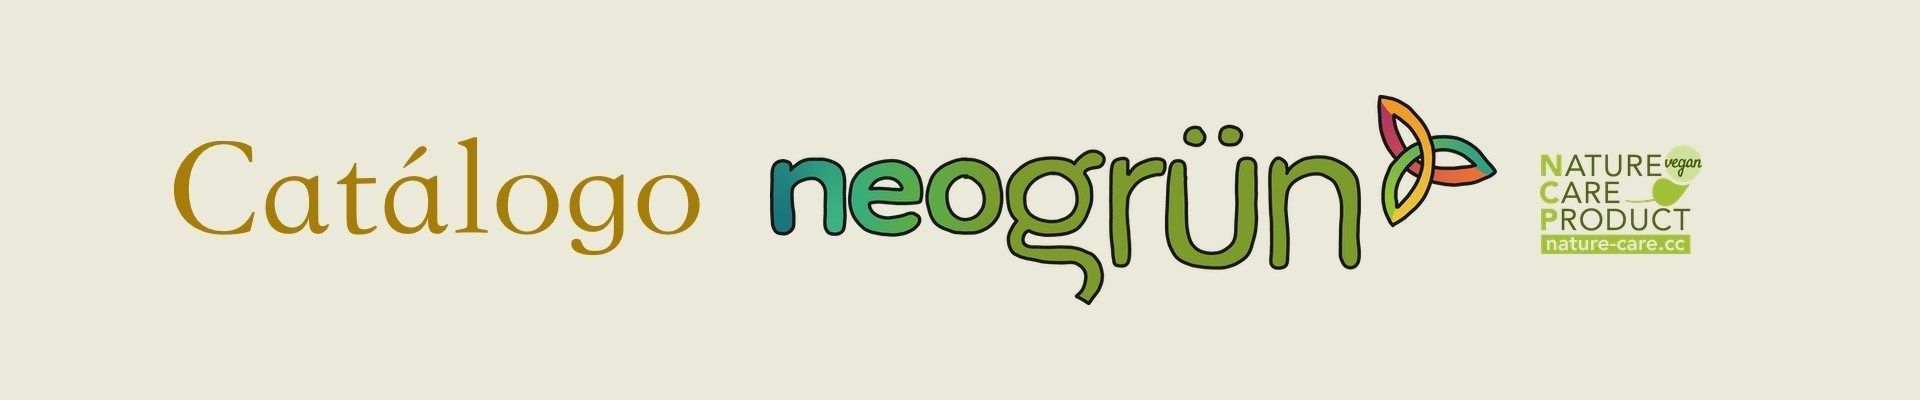 Comprar juguetes educativos para niños de la marca Neogrun | Veobio